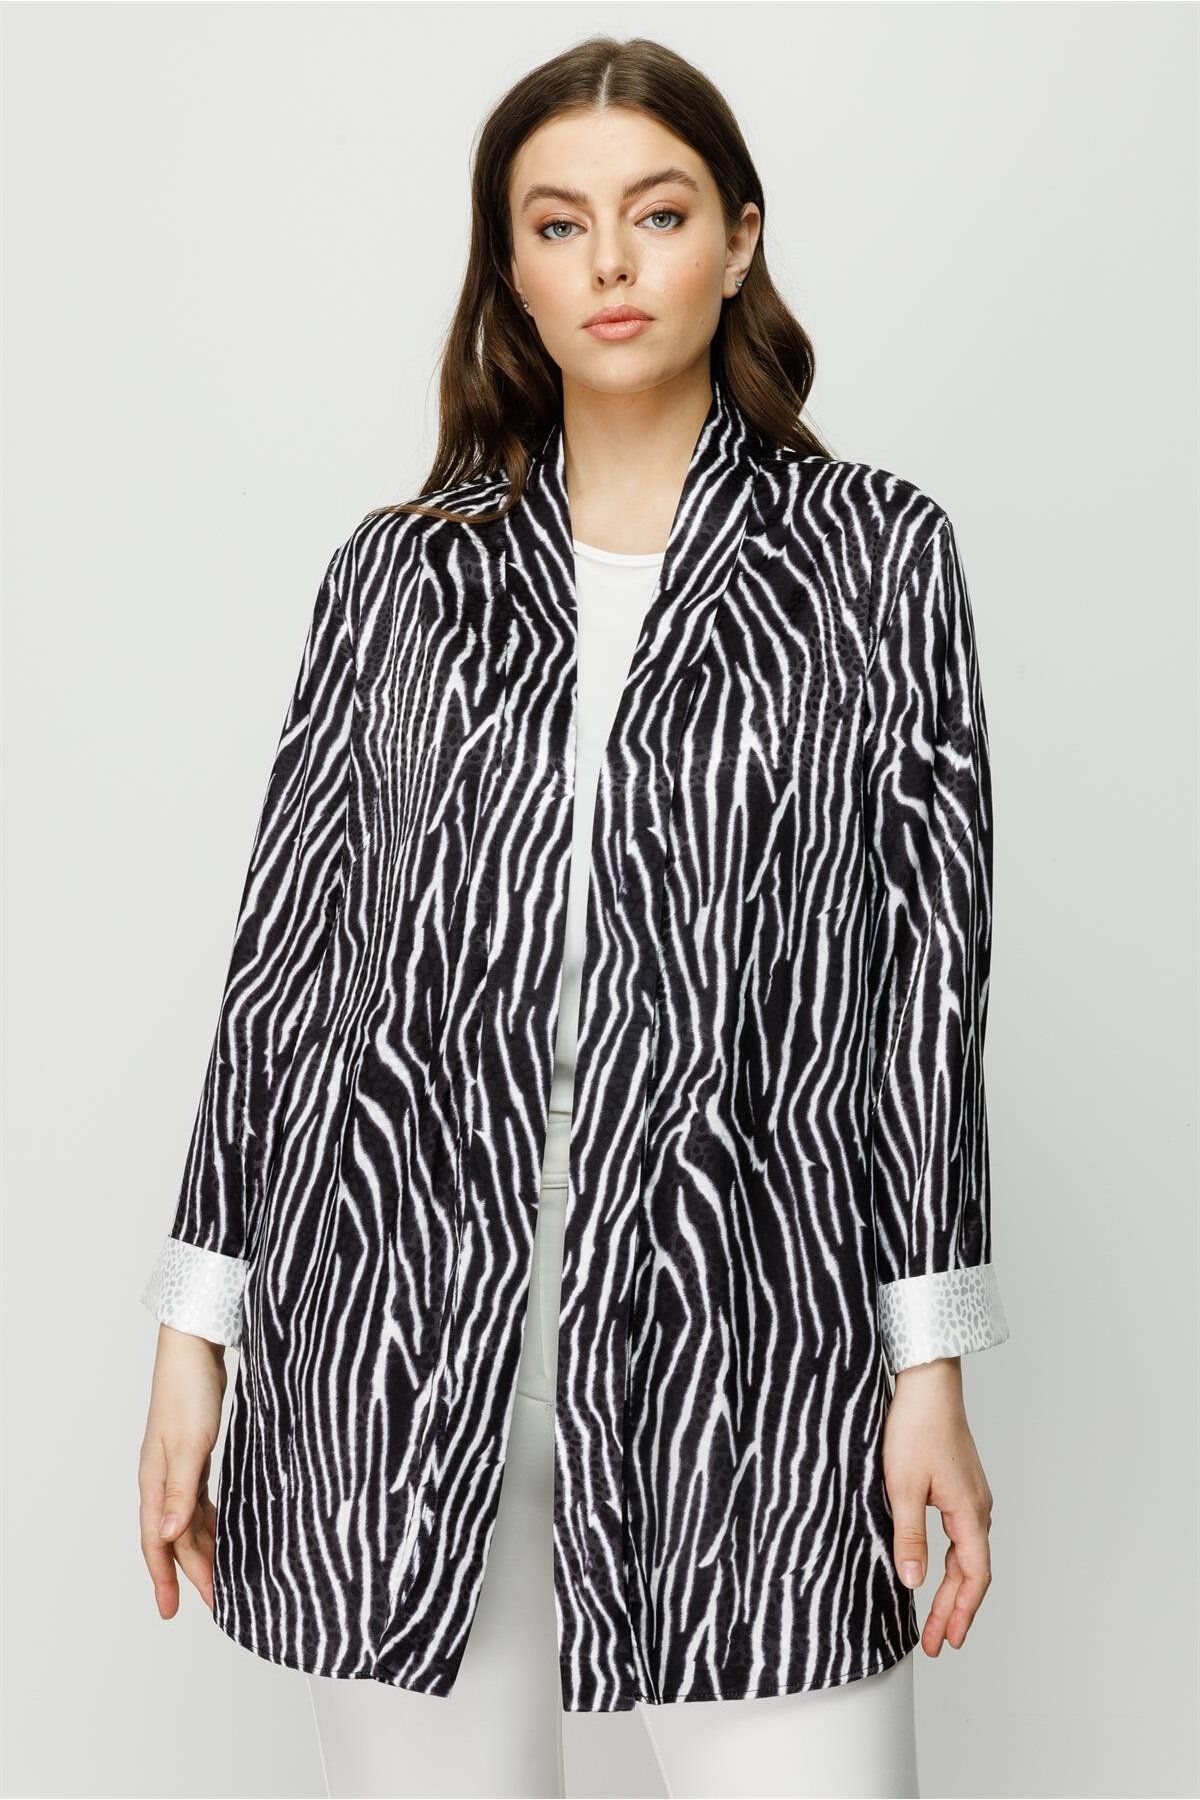 Moda İlgi Modailgi Zebra Desen Ikili Kısa Tunik Siyah